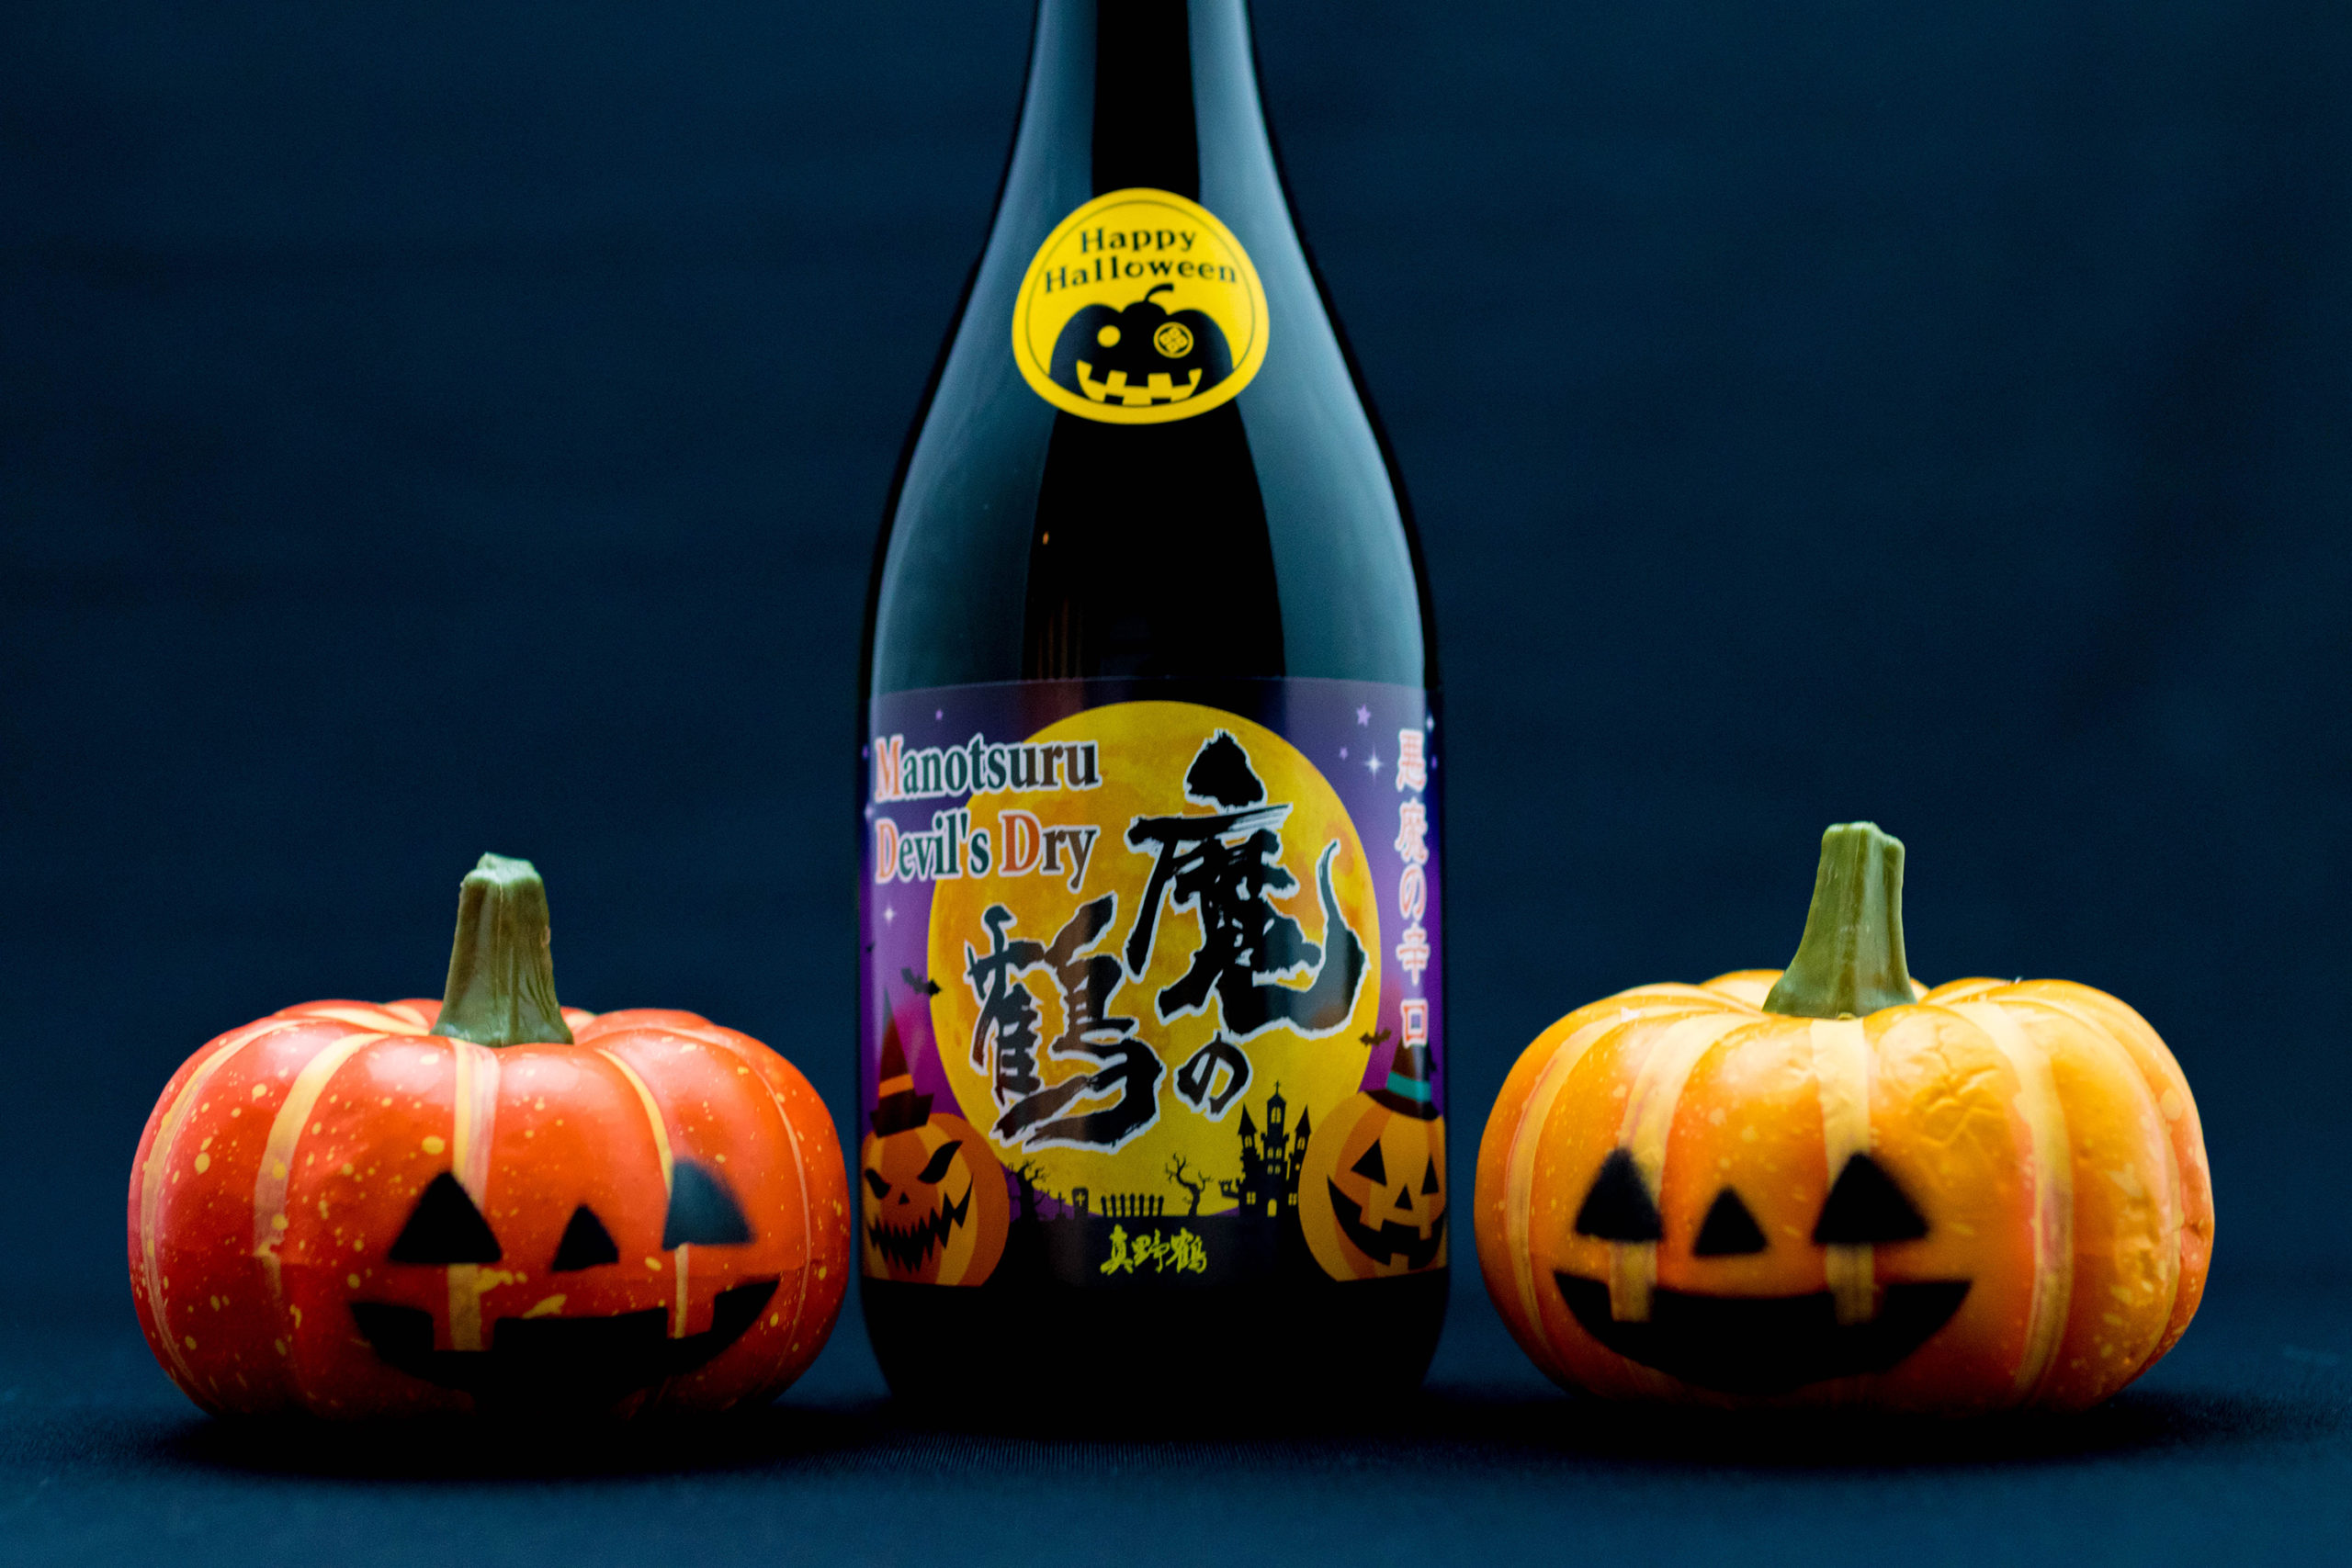 ハロウィン限定日本酒 魔除け の 魔の鶴 でhappy Halloween とんとくる